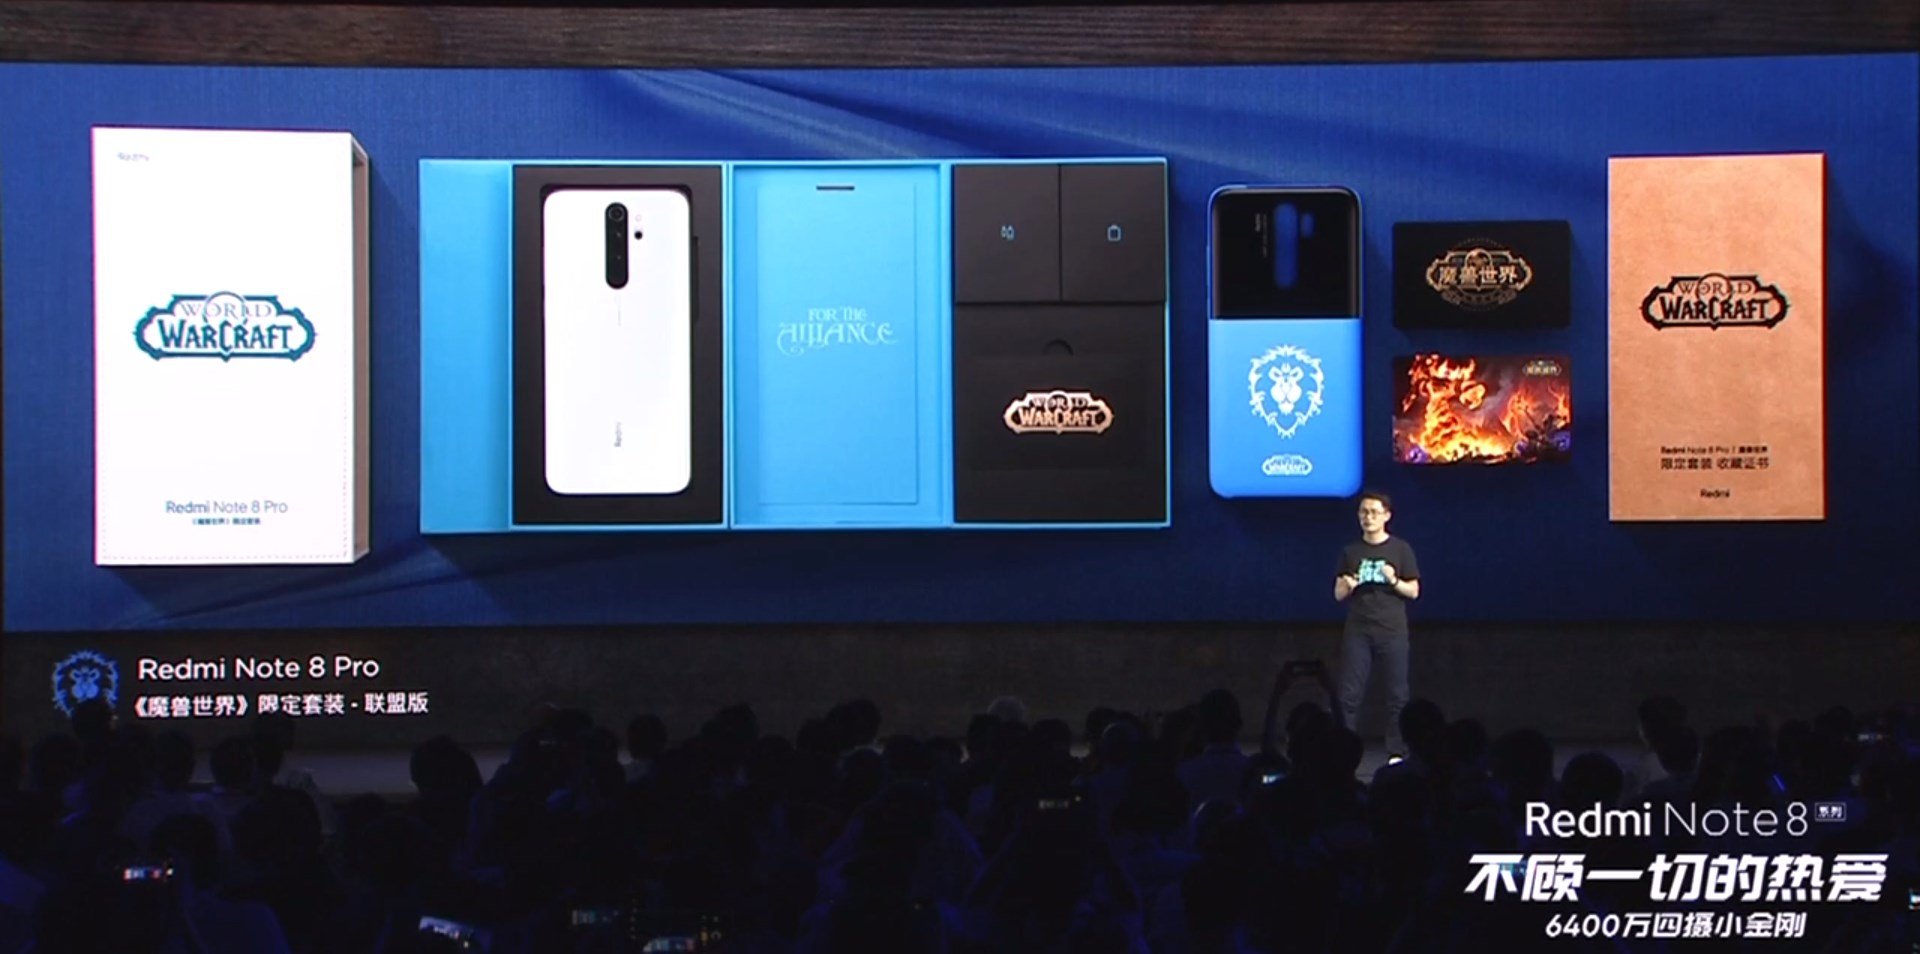 Xiaomi chính thức ra
mắt Redmi Note 8 và Note 8 Pro, giá bán từ 140 USD cho Note
8 và từ 196 USD cho Note 8 Pro